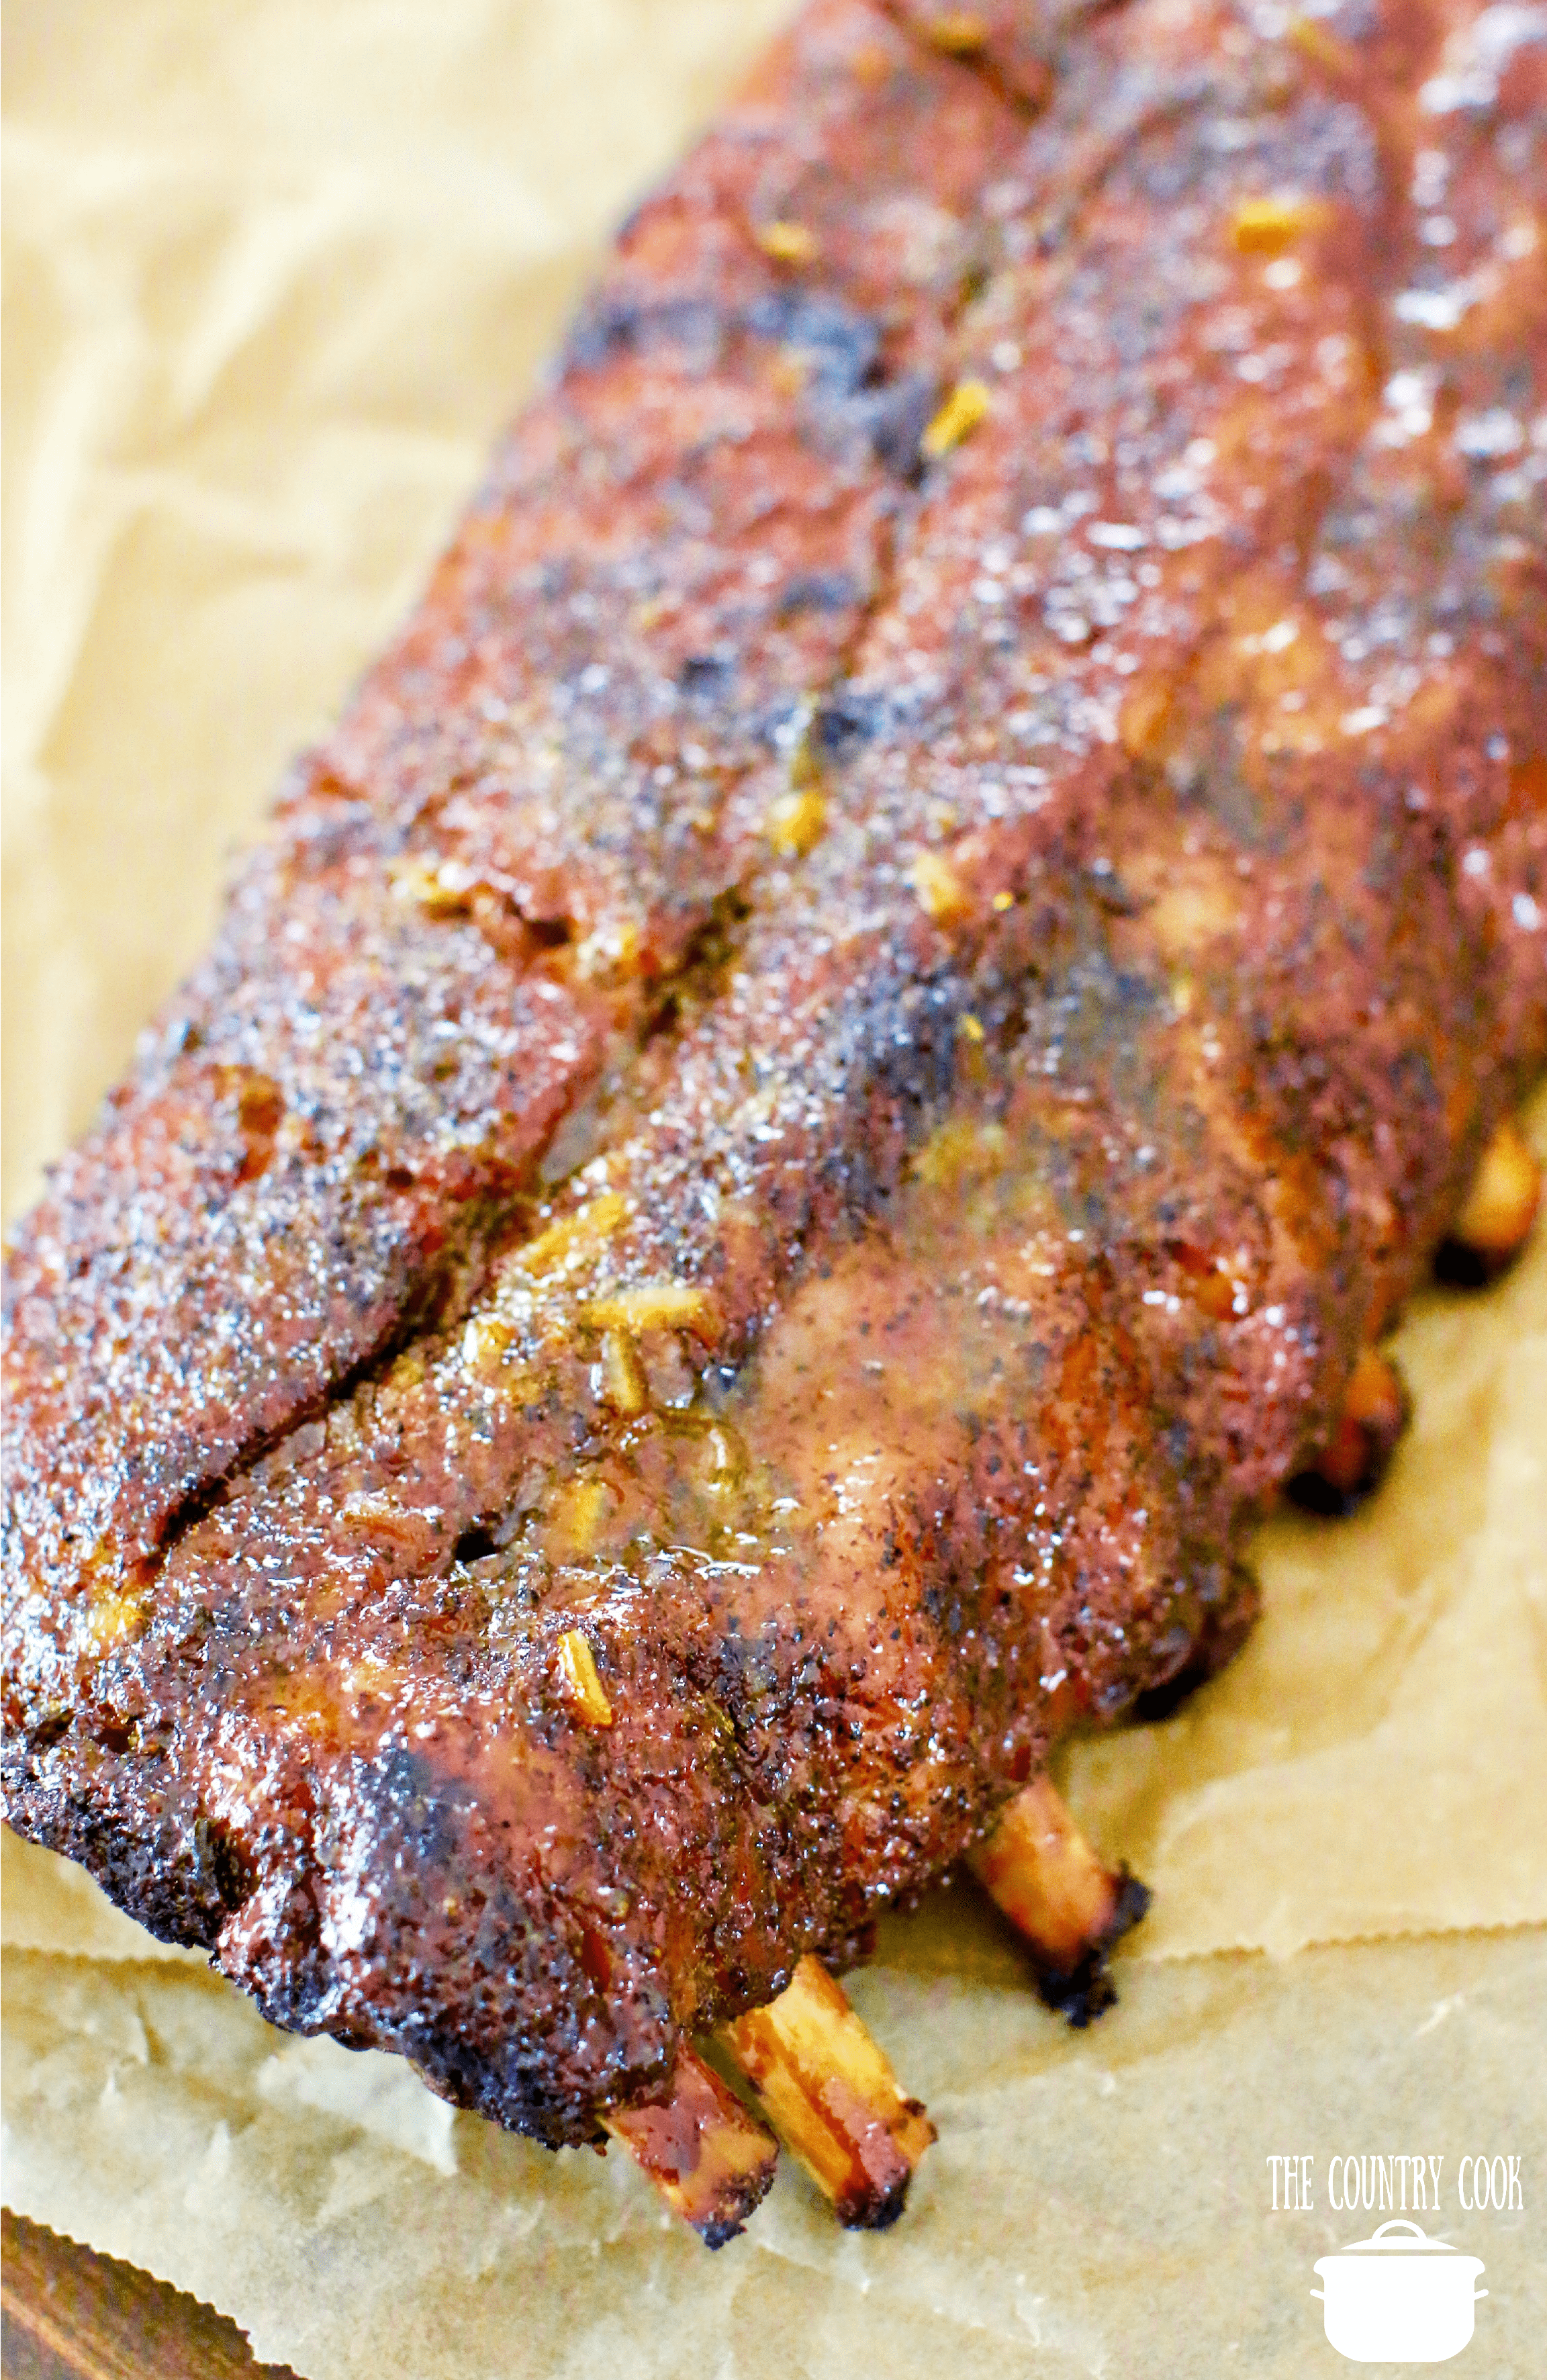 BBQ Pork grilled ribs with a pork seasoning rub.